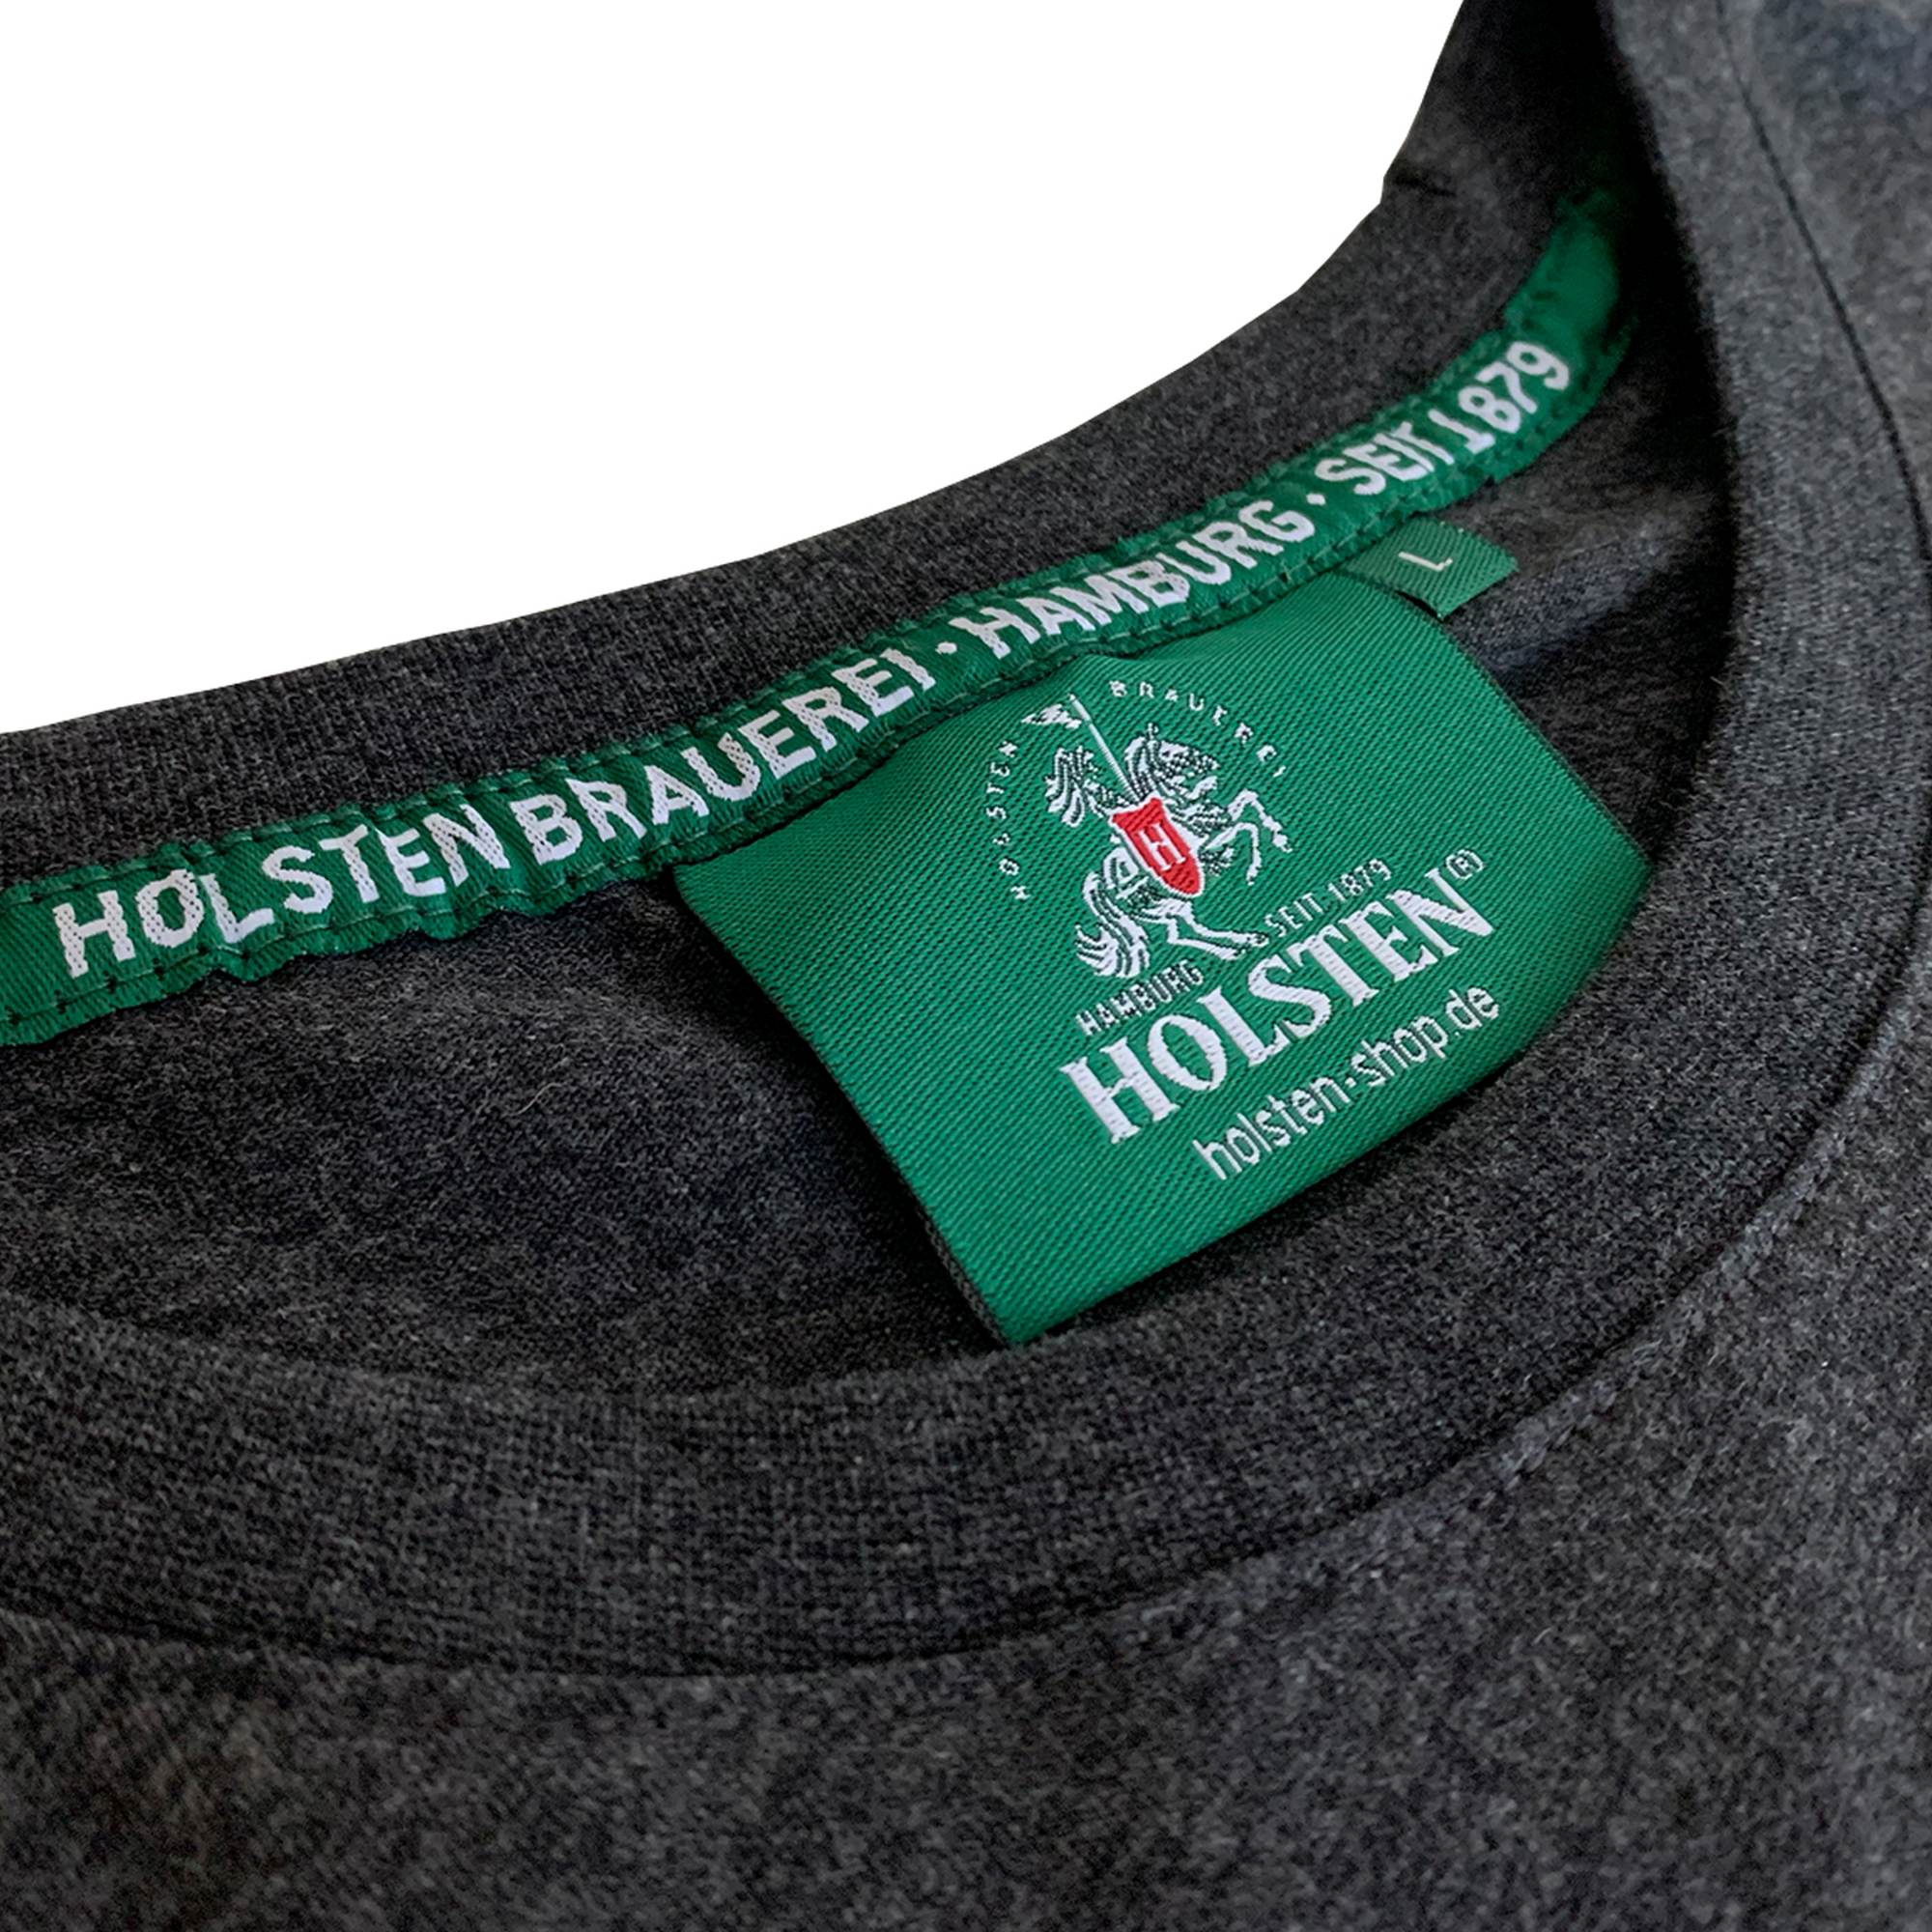 Holsten - T-Shirt Seit 1879 - anthrazit